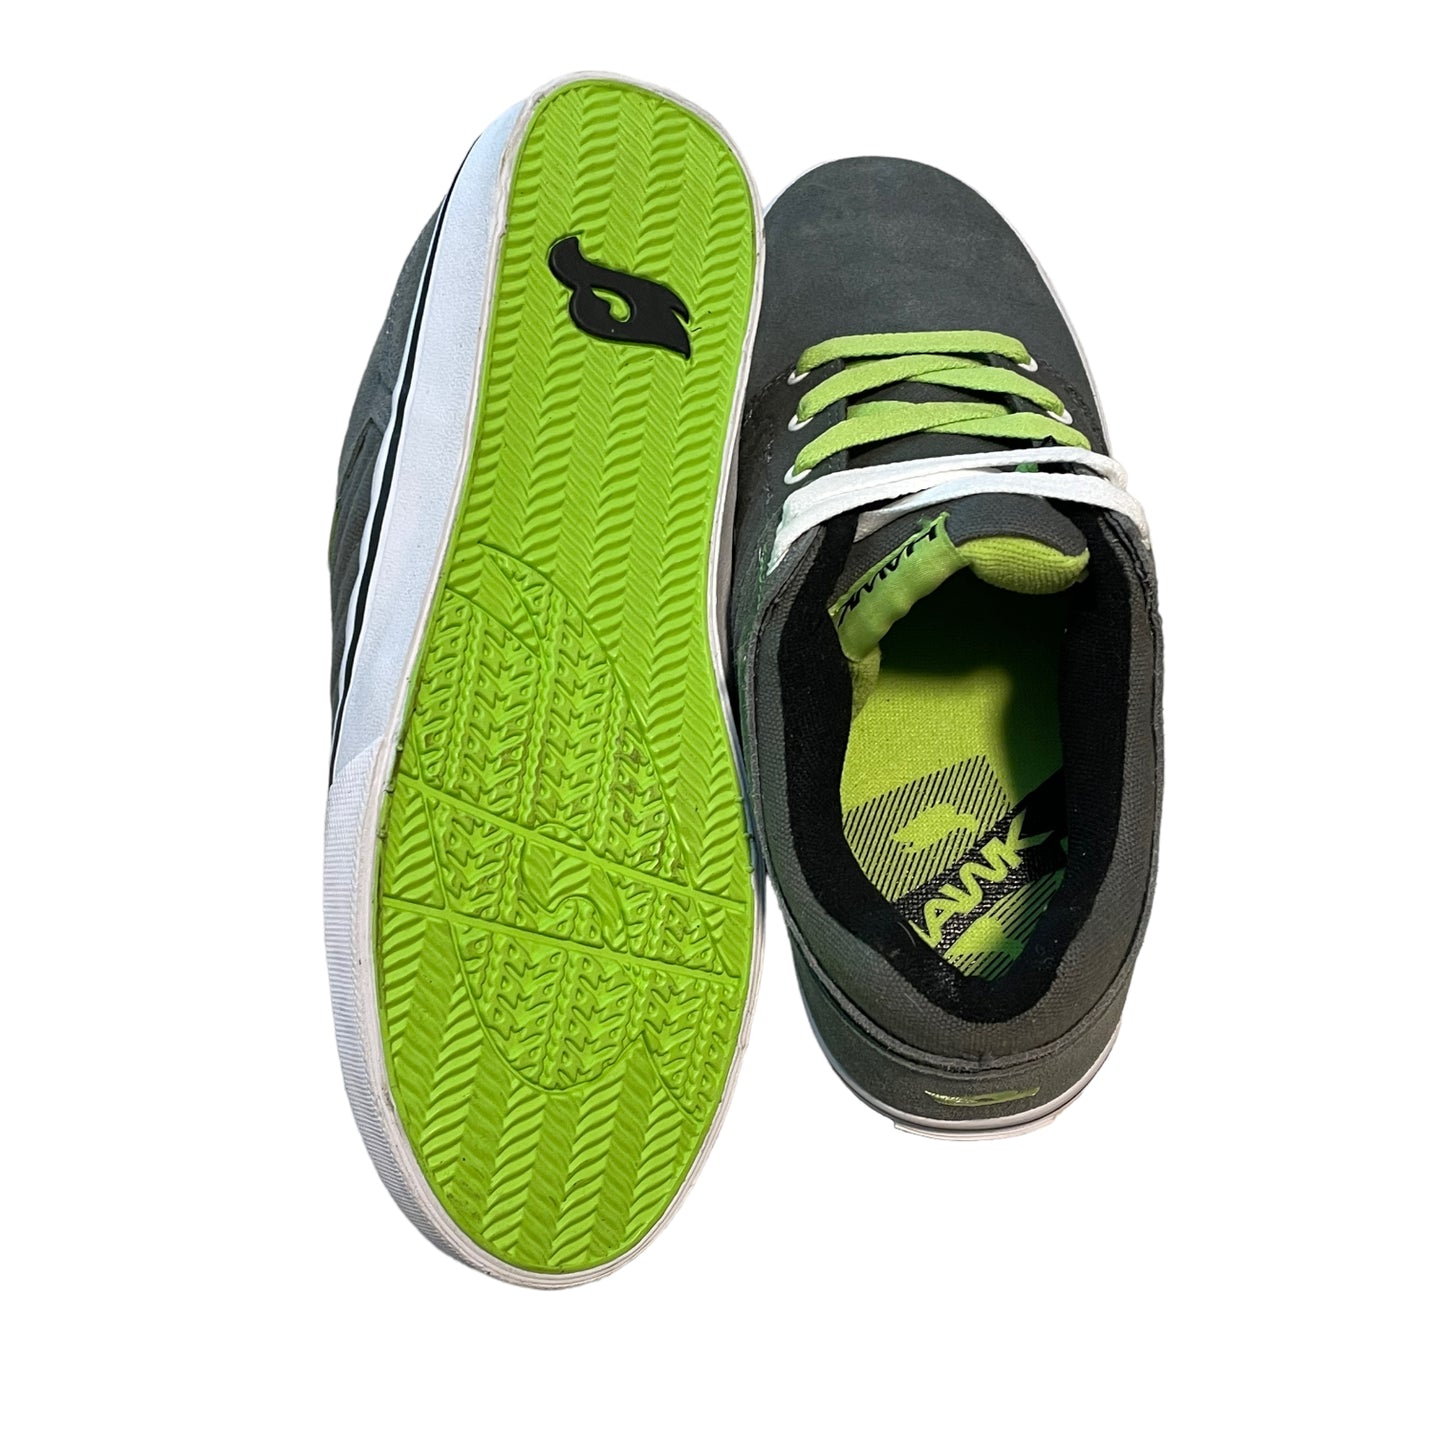 Hawk Gray Green Boys Sneakers